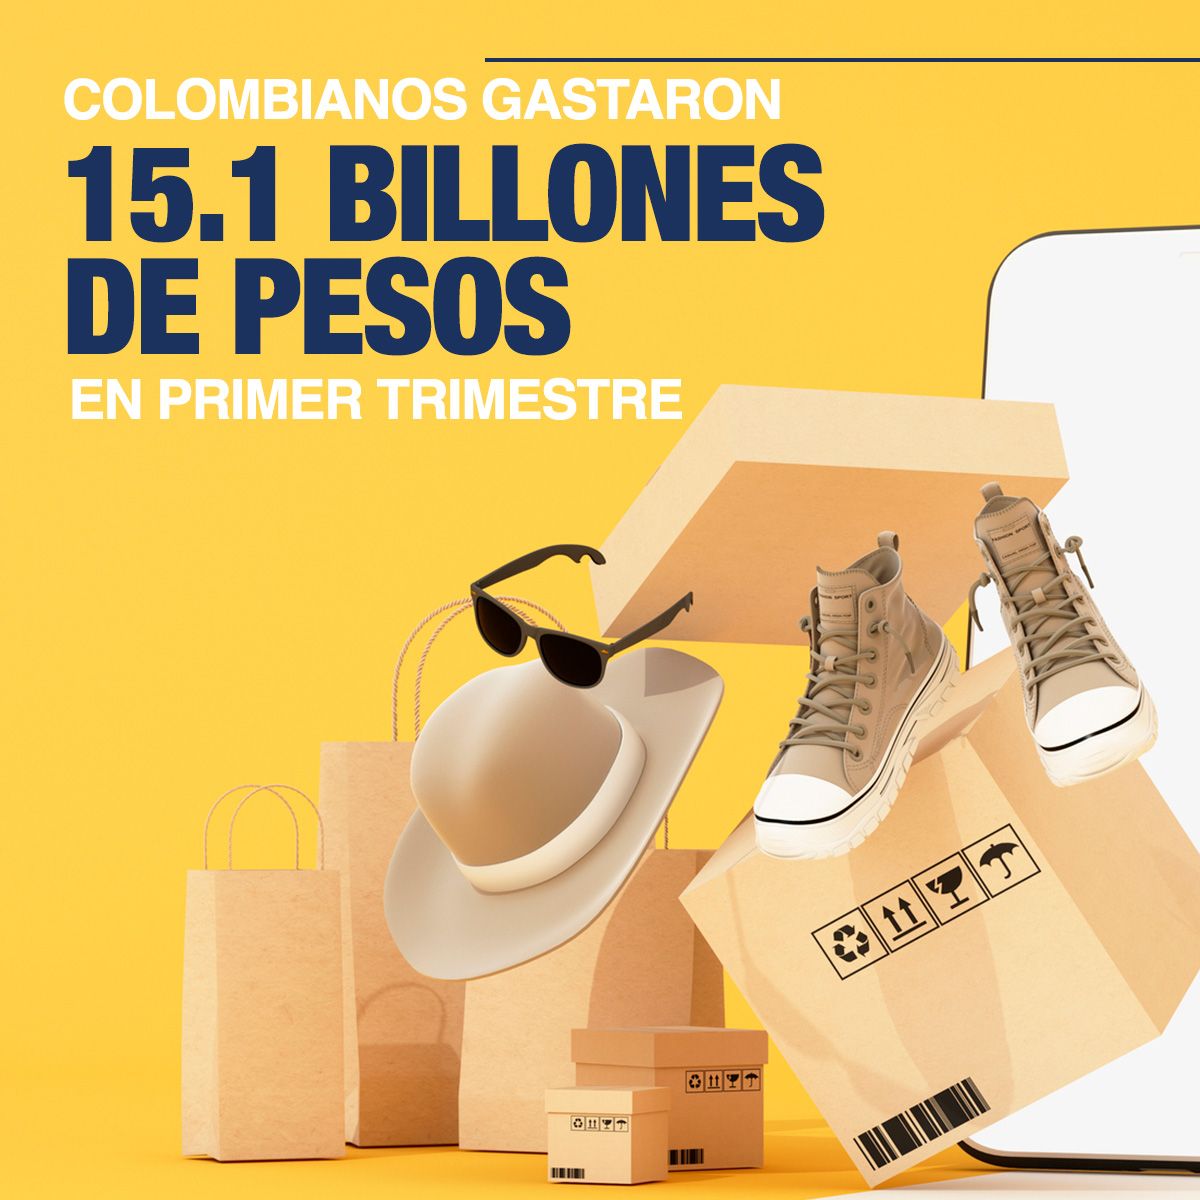 Colombianos Gastaron 15.1 Billones de Pesos en Primer Trimestre del Año